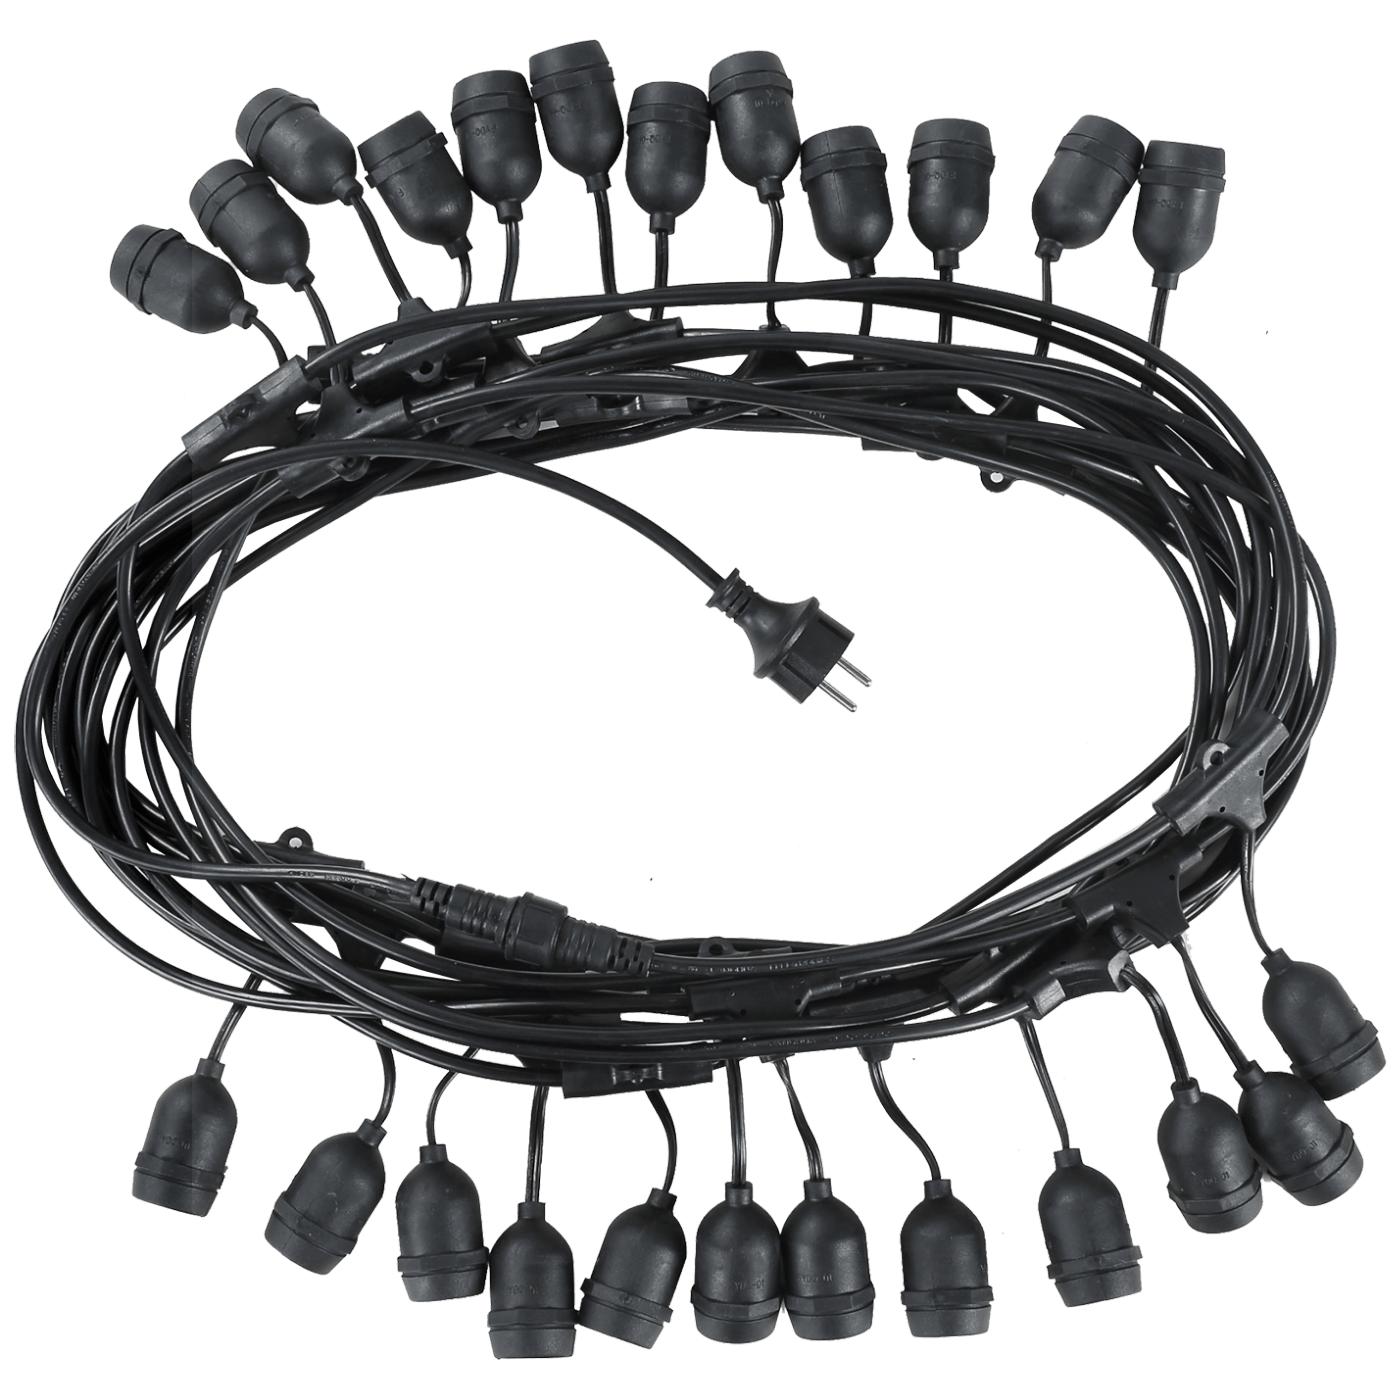 Kabel sa 24 sijaličnih grla E27, dužina 15 met., Outdoor